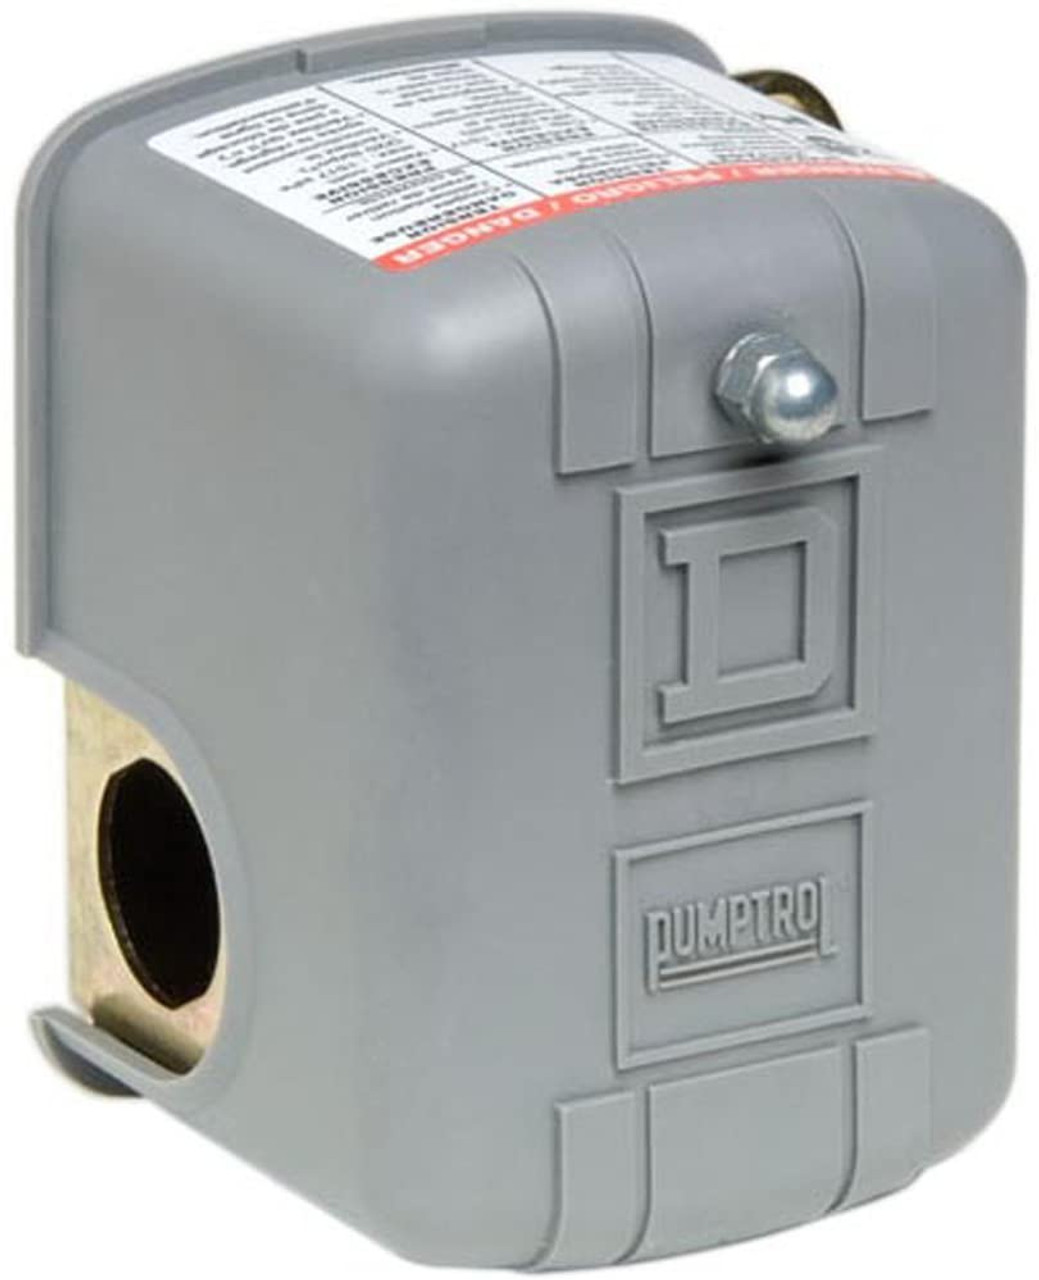 Square D Low Pressure Cutoff  Pressure Switch 9013 Series